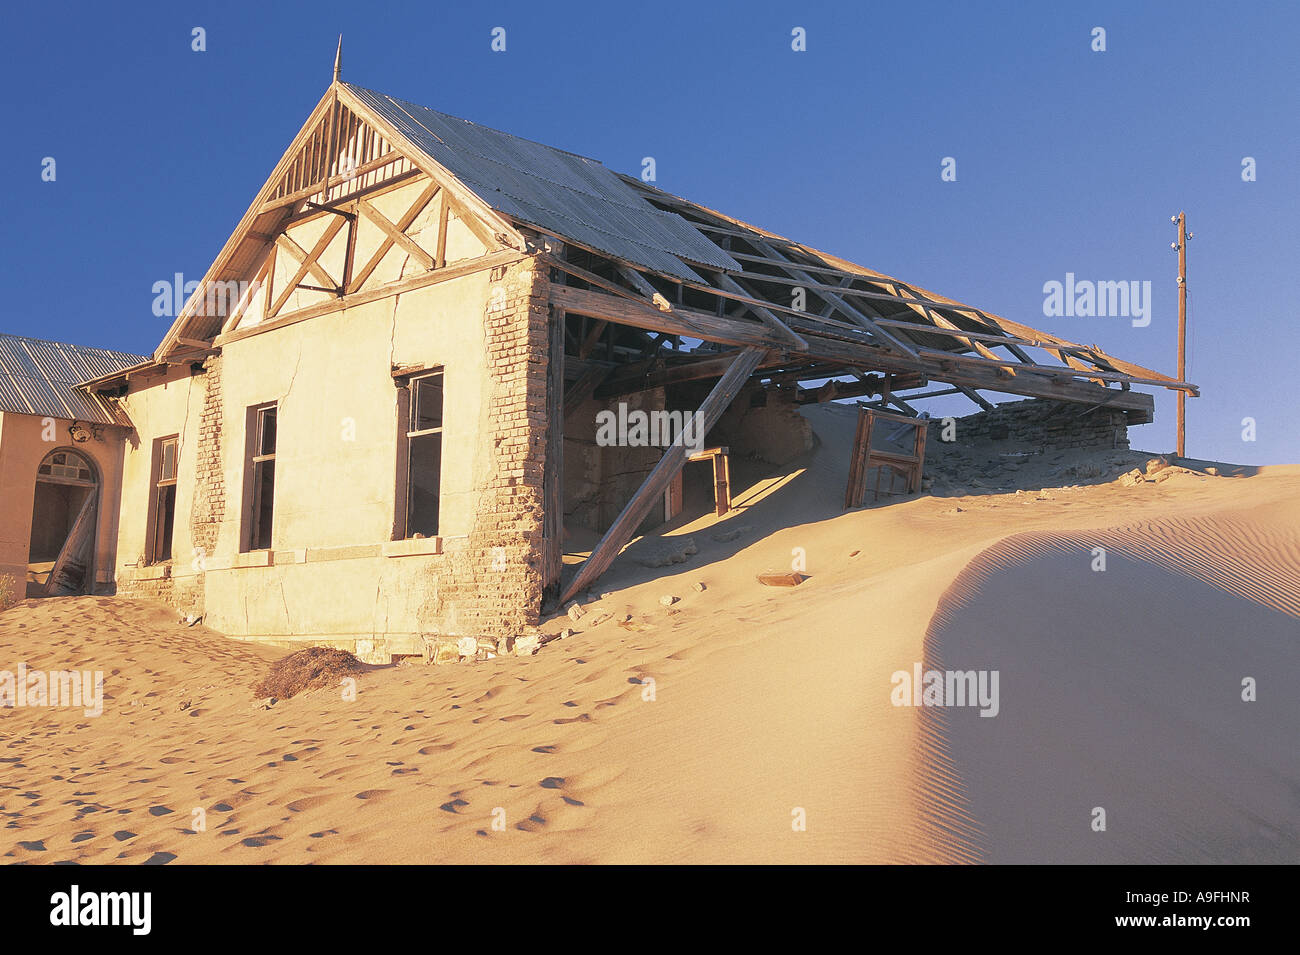 Maison détruite et abandonnée dans la ville minière fantôme de Kolmanskop Namibie Afrique du sud ouest Banque D'Images